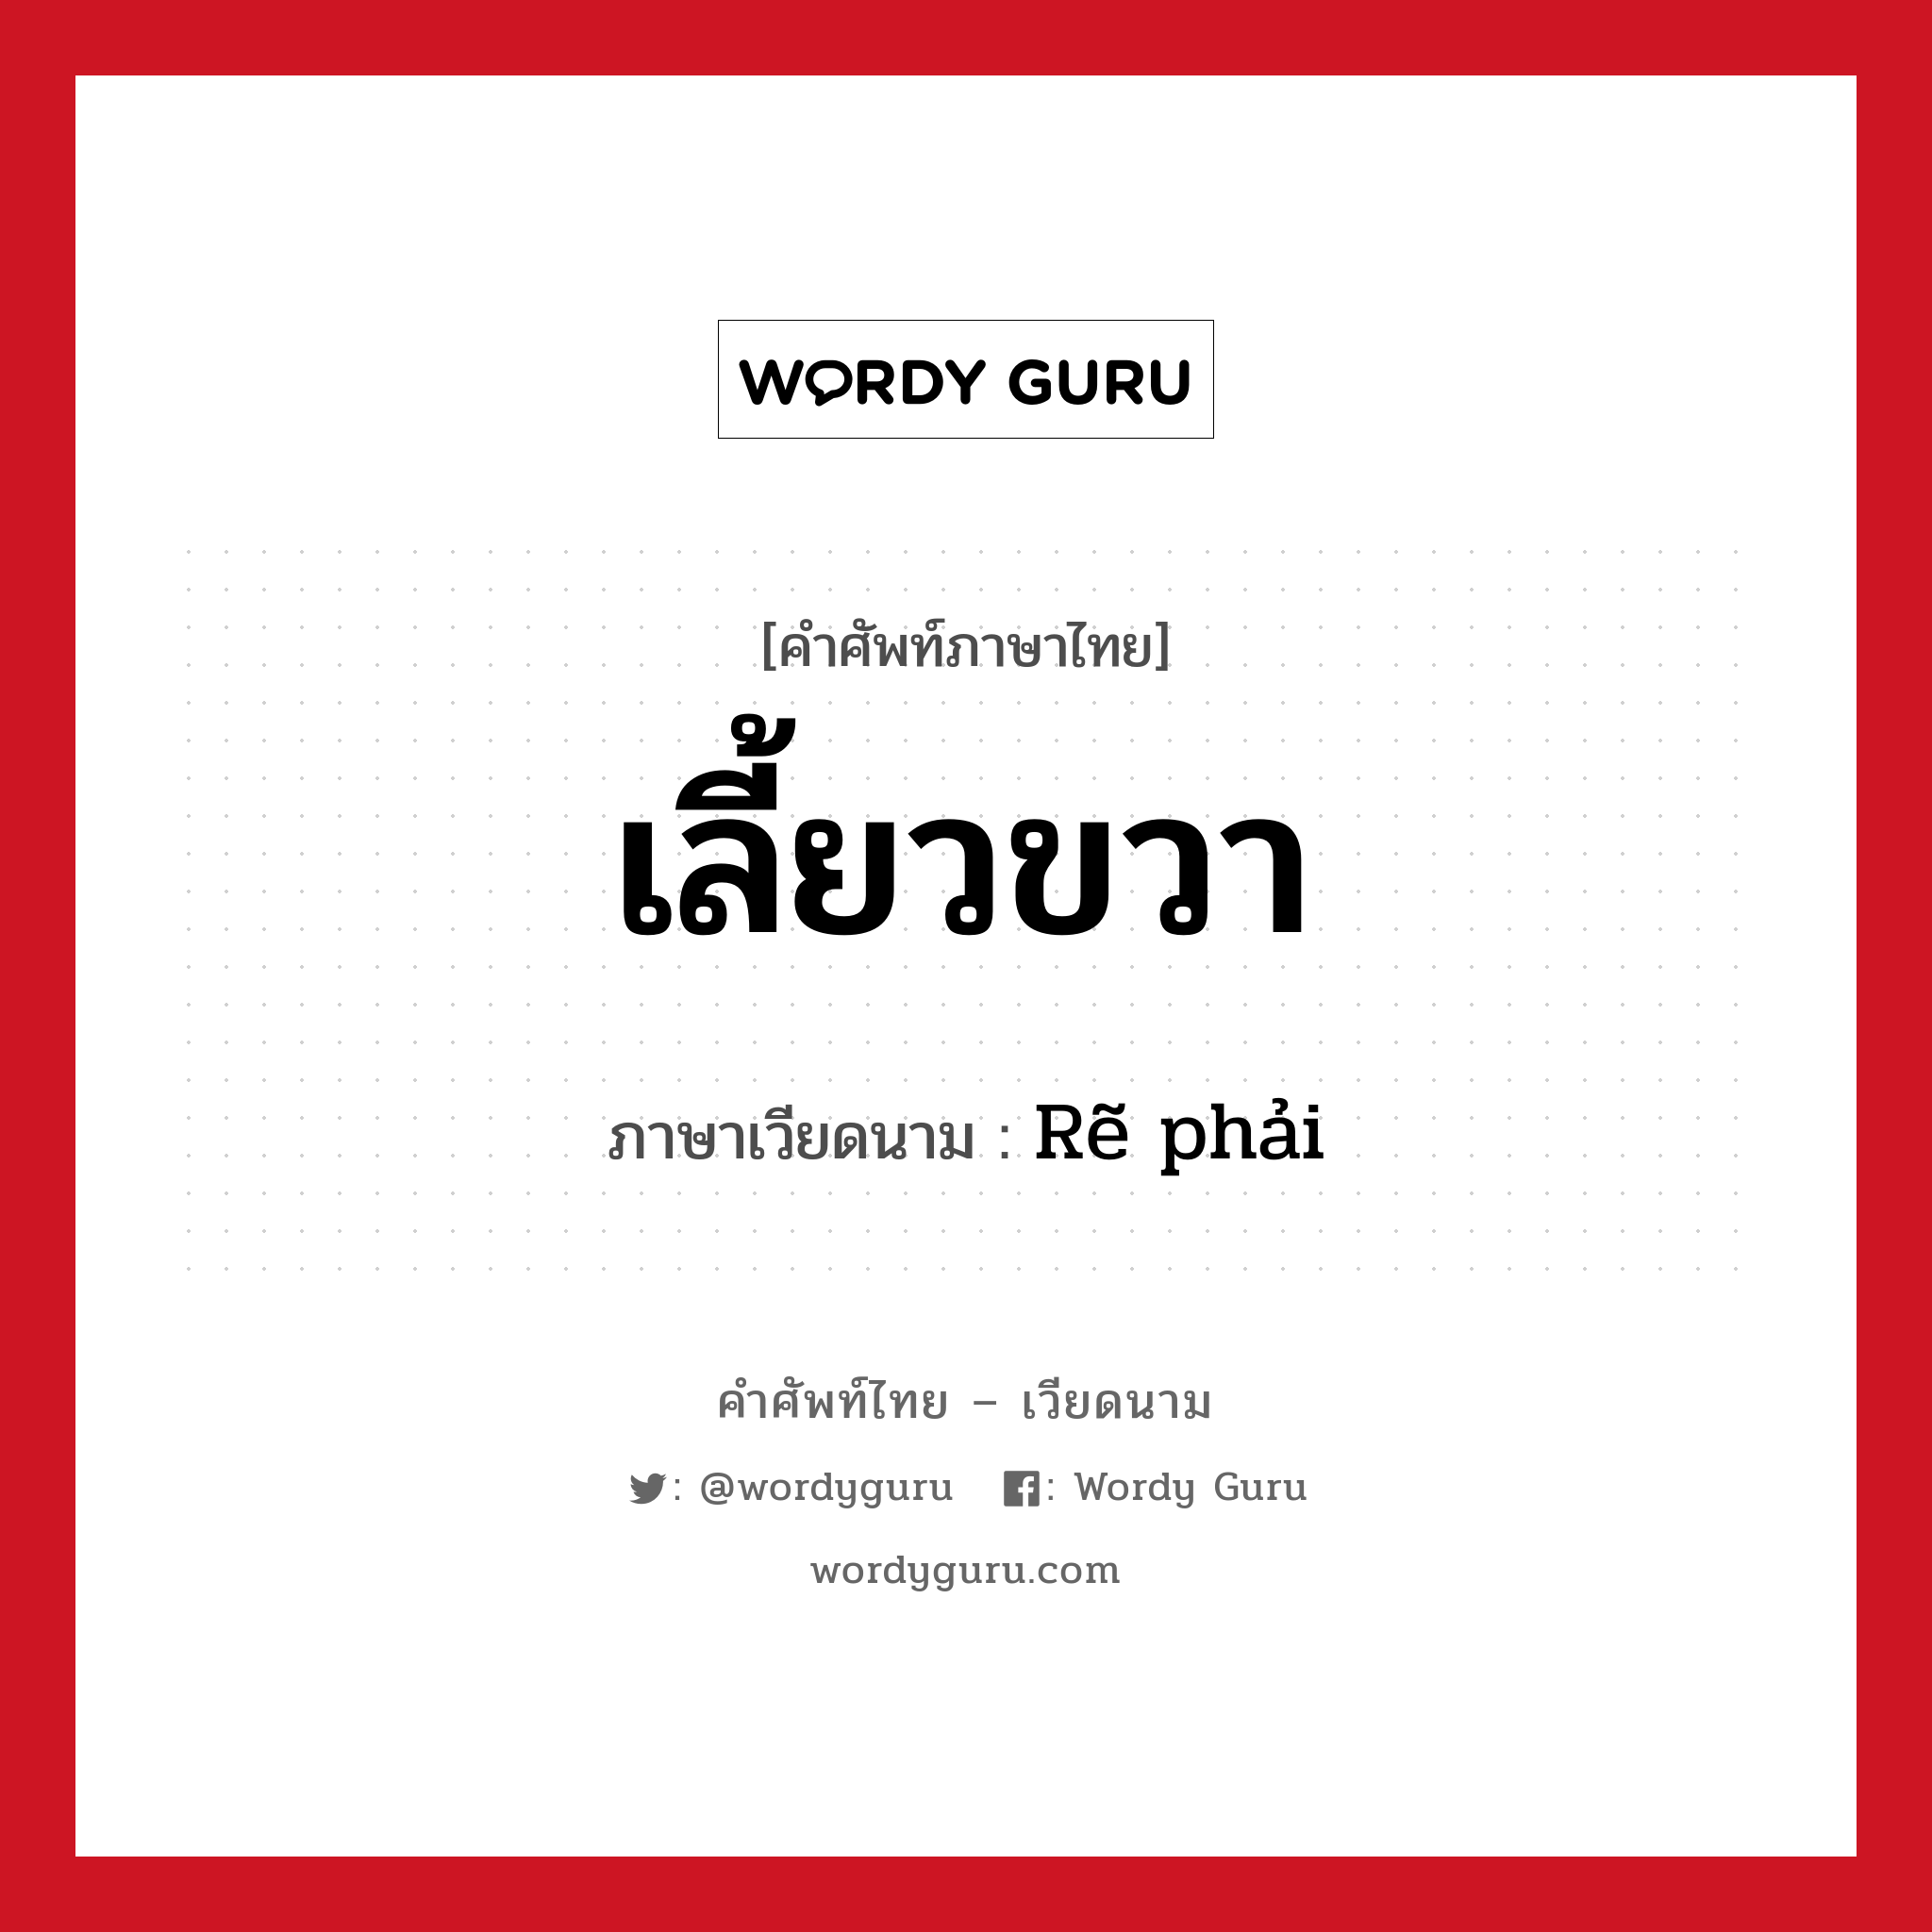 เลี้ยวขวา ภาษาเวียดนามคืออะไร, คำศัพท์ภาษาไทย - เวียดนาม เลี้ยวขวา ภาษาเวียดนาม Rẽ phải หมวด การเดินทาง หมวด การเดินทาง